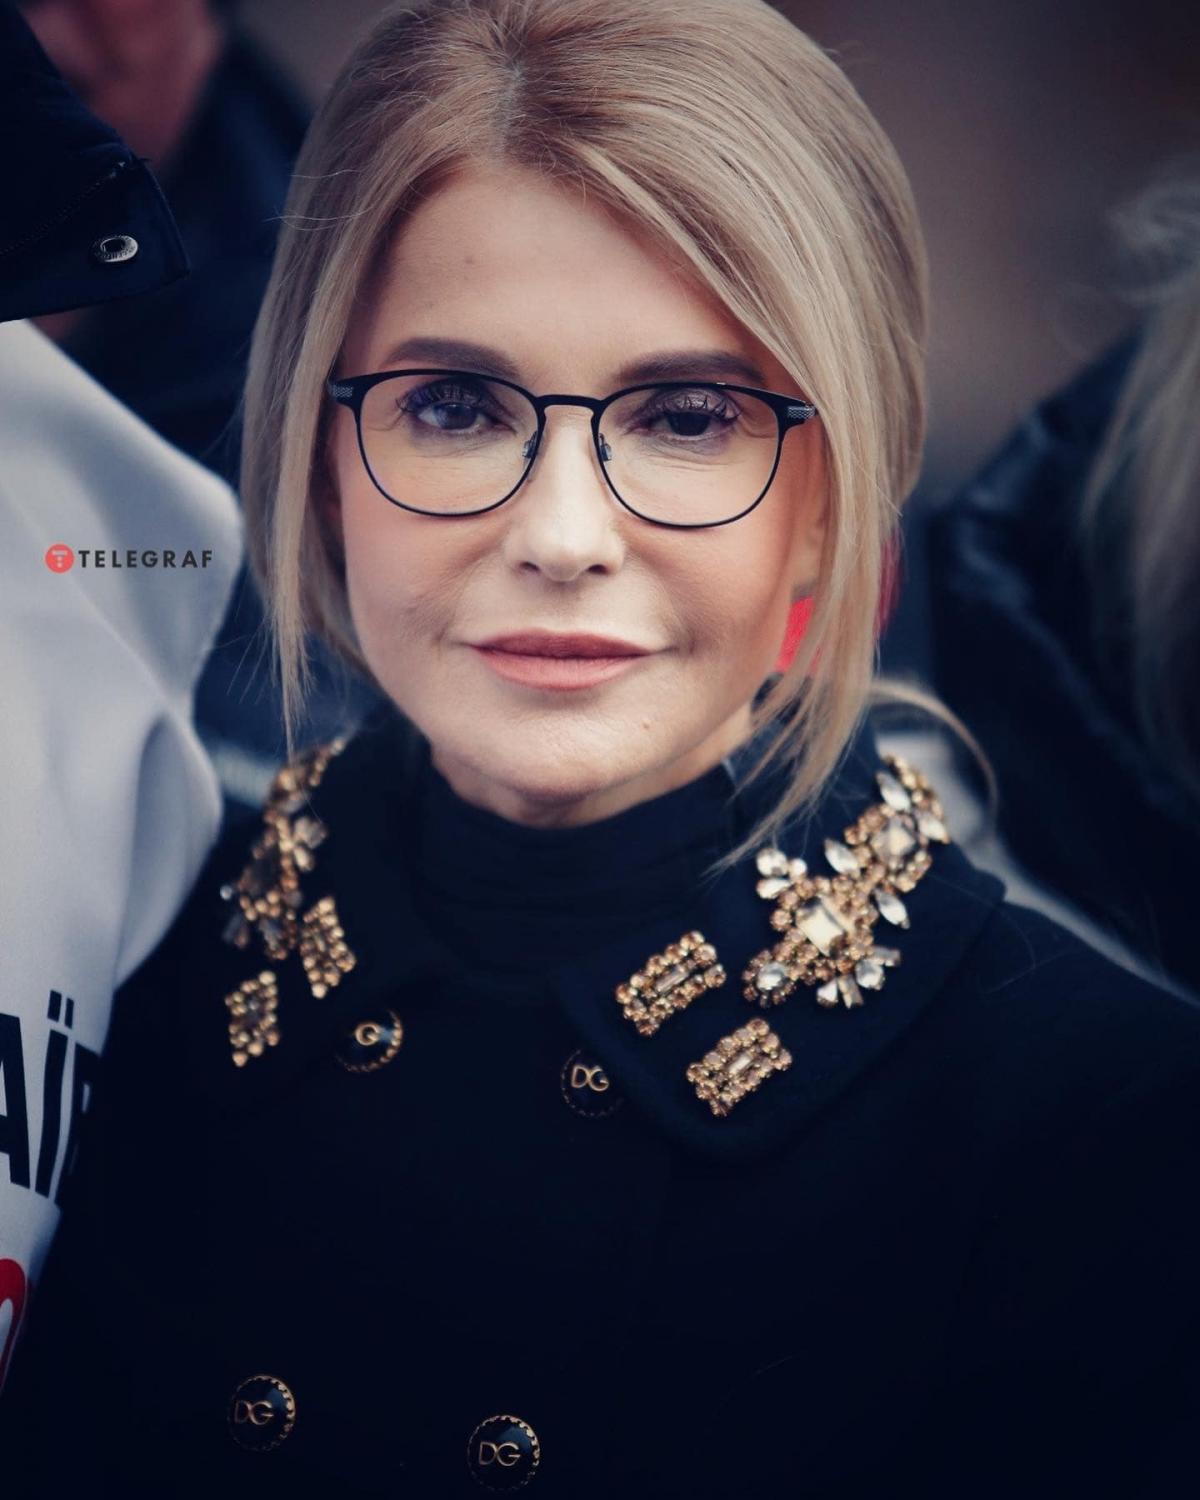 Тимошенко предстала в новом образе / facebook.com/yan.dobronosov